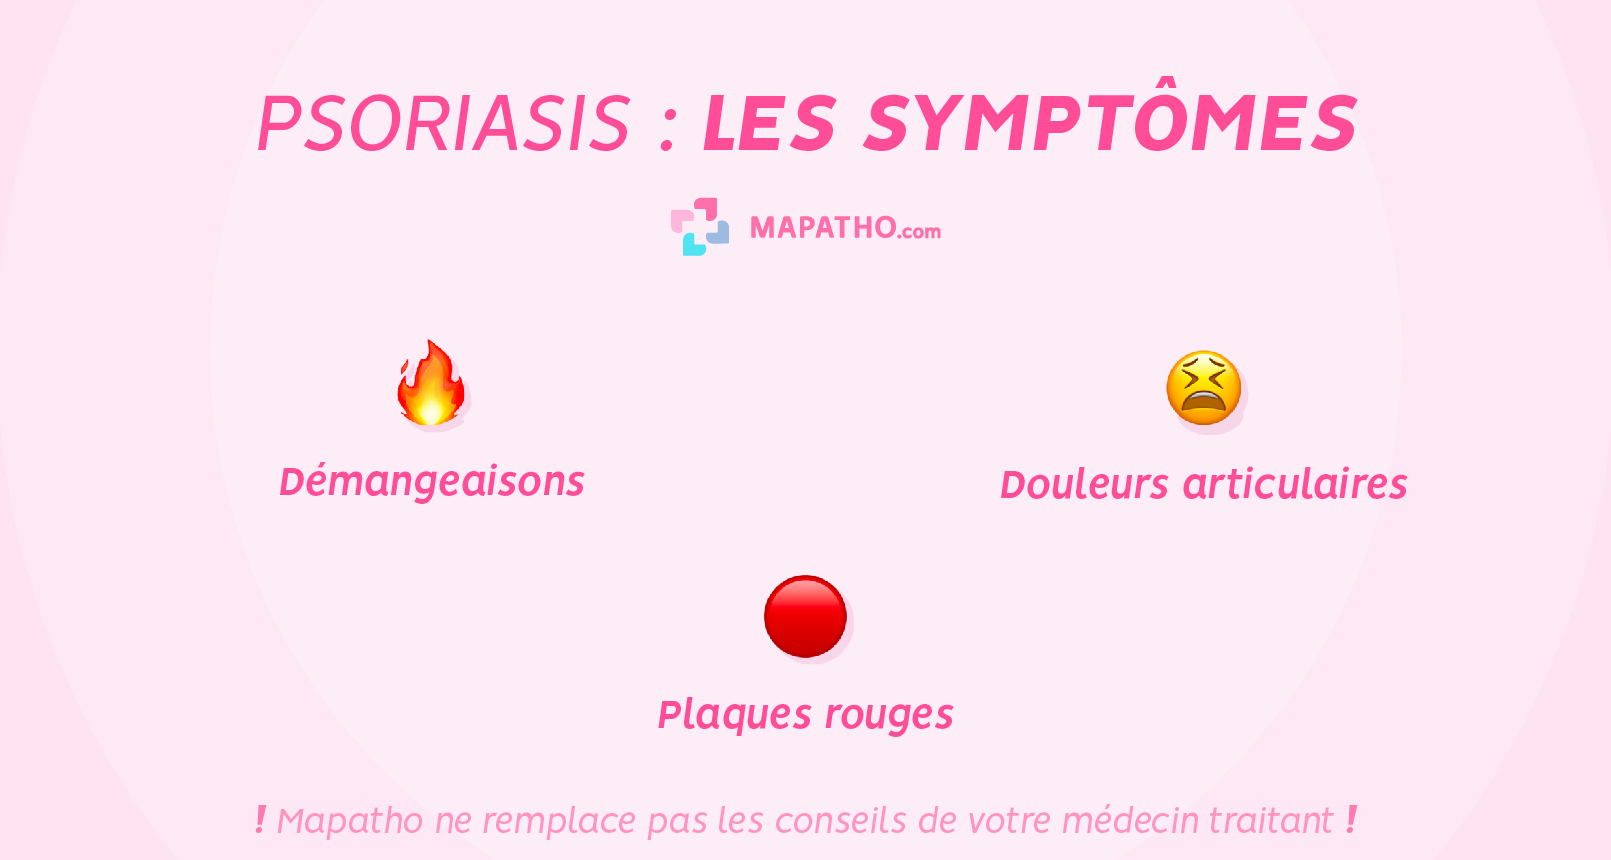 Les symptomes du psoriasis